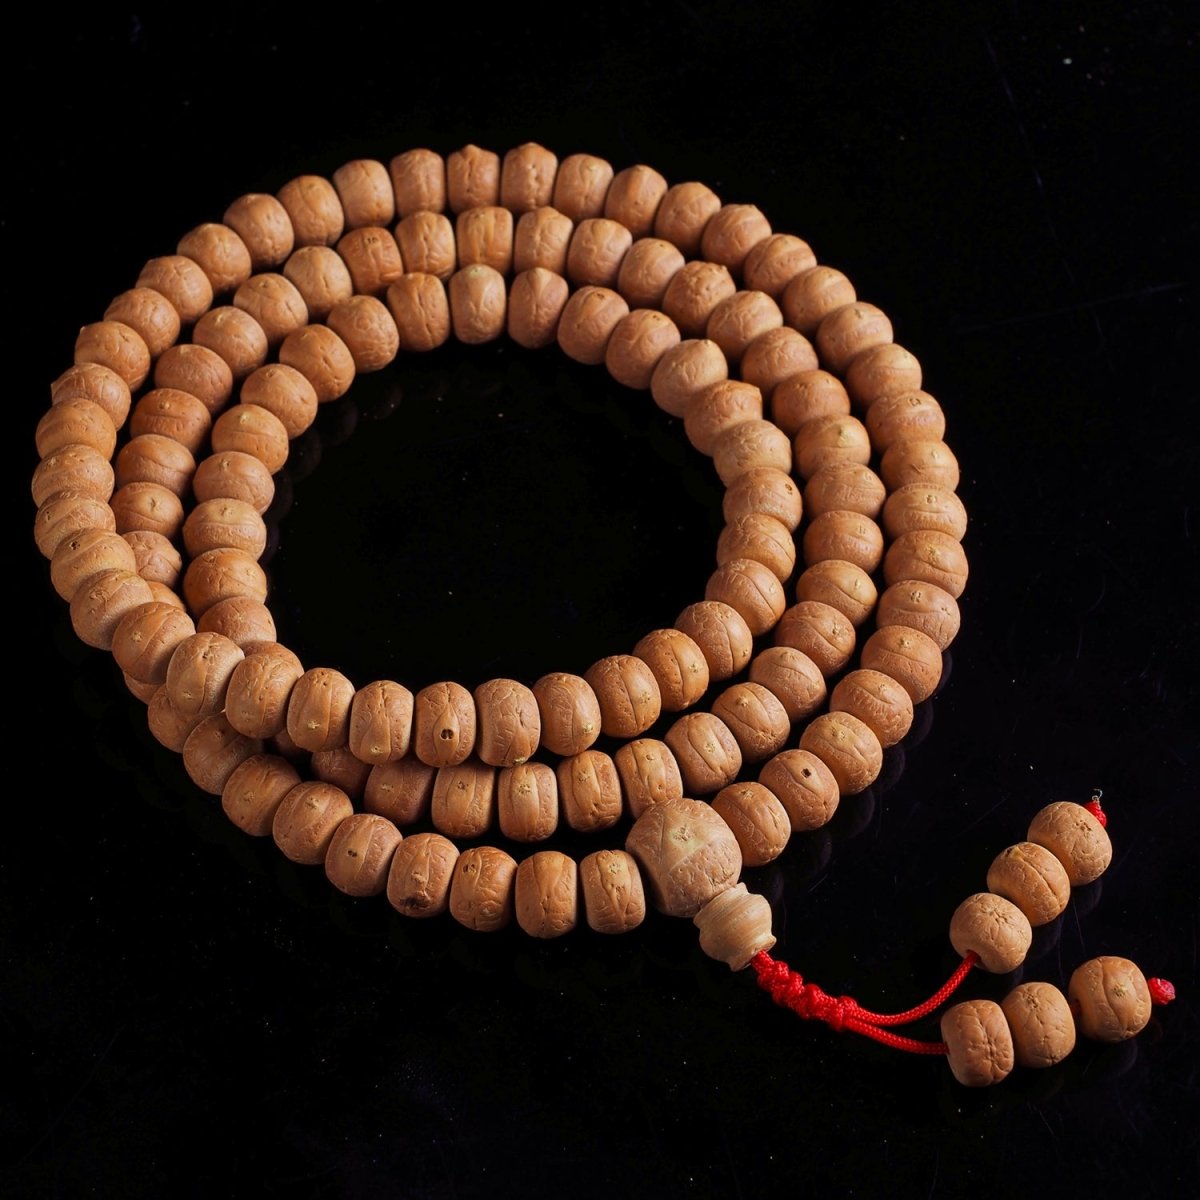 Phoenix Eye Buddhist Mala Beads - Rudraksha Mala Jewelry